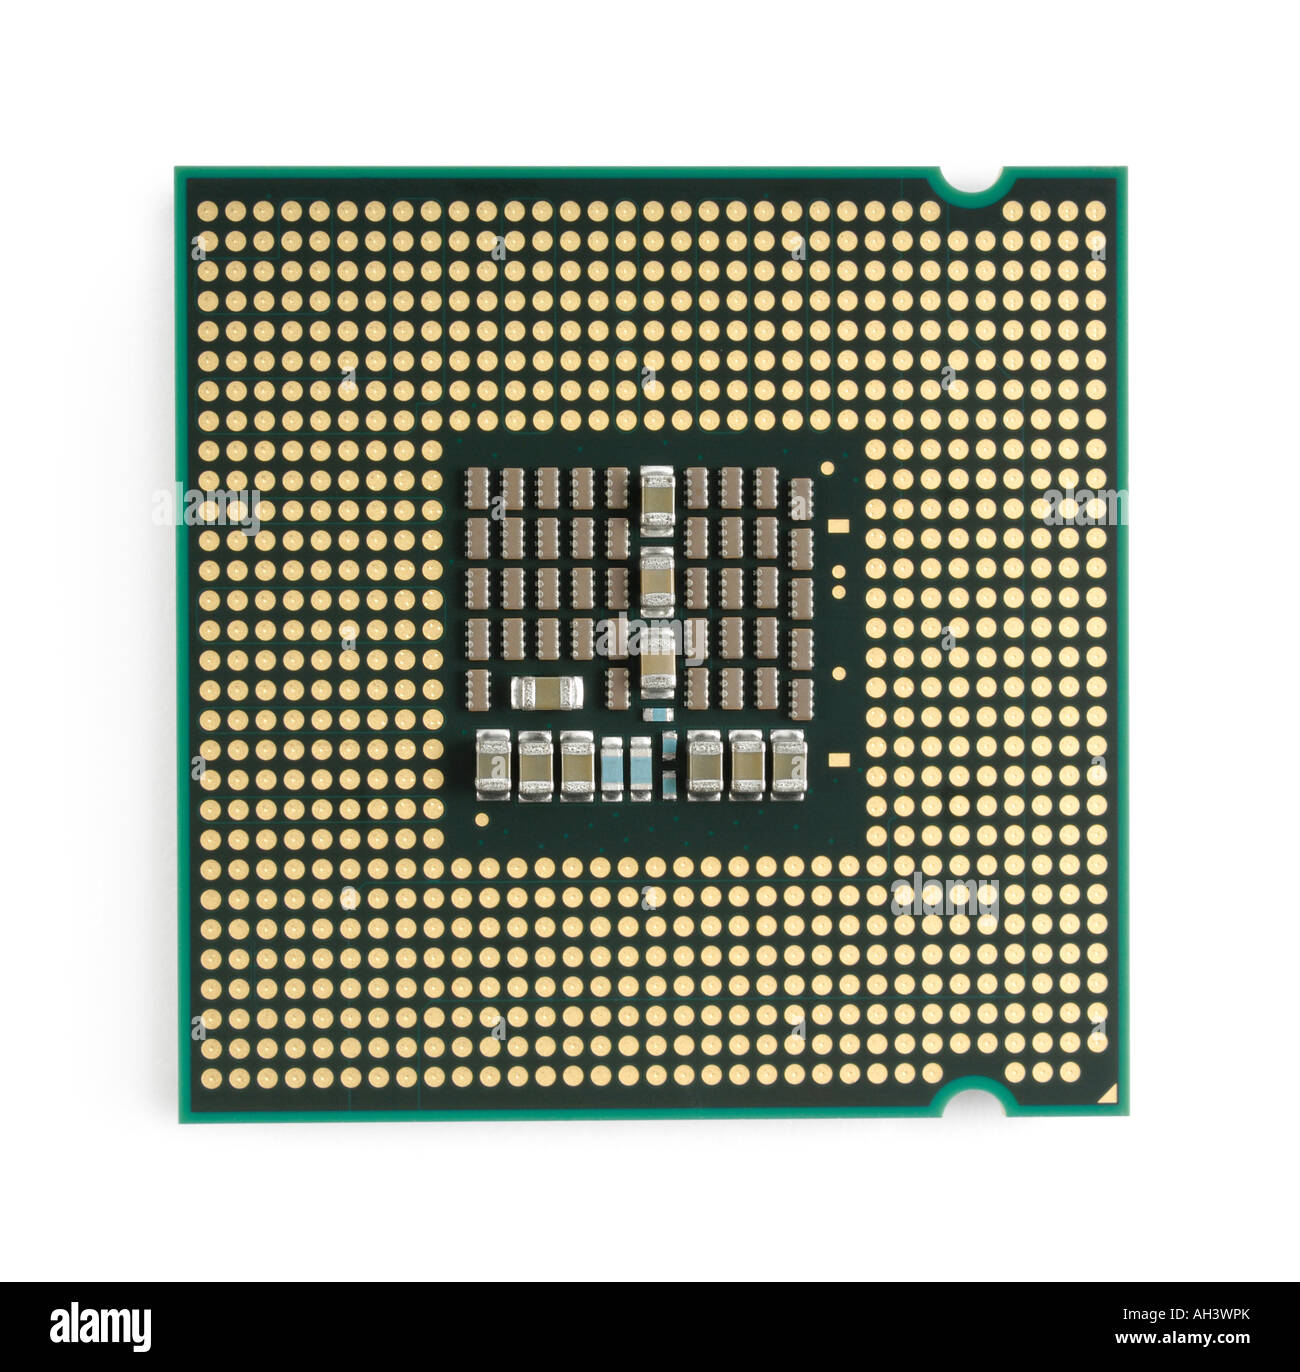 Intel Core 2 Quad Q6600 CPU Quad core computer processor closeup LGA775  socket contacts Stock Photo - Alamy